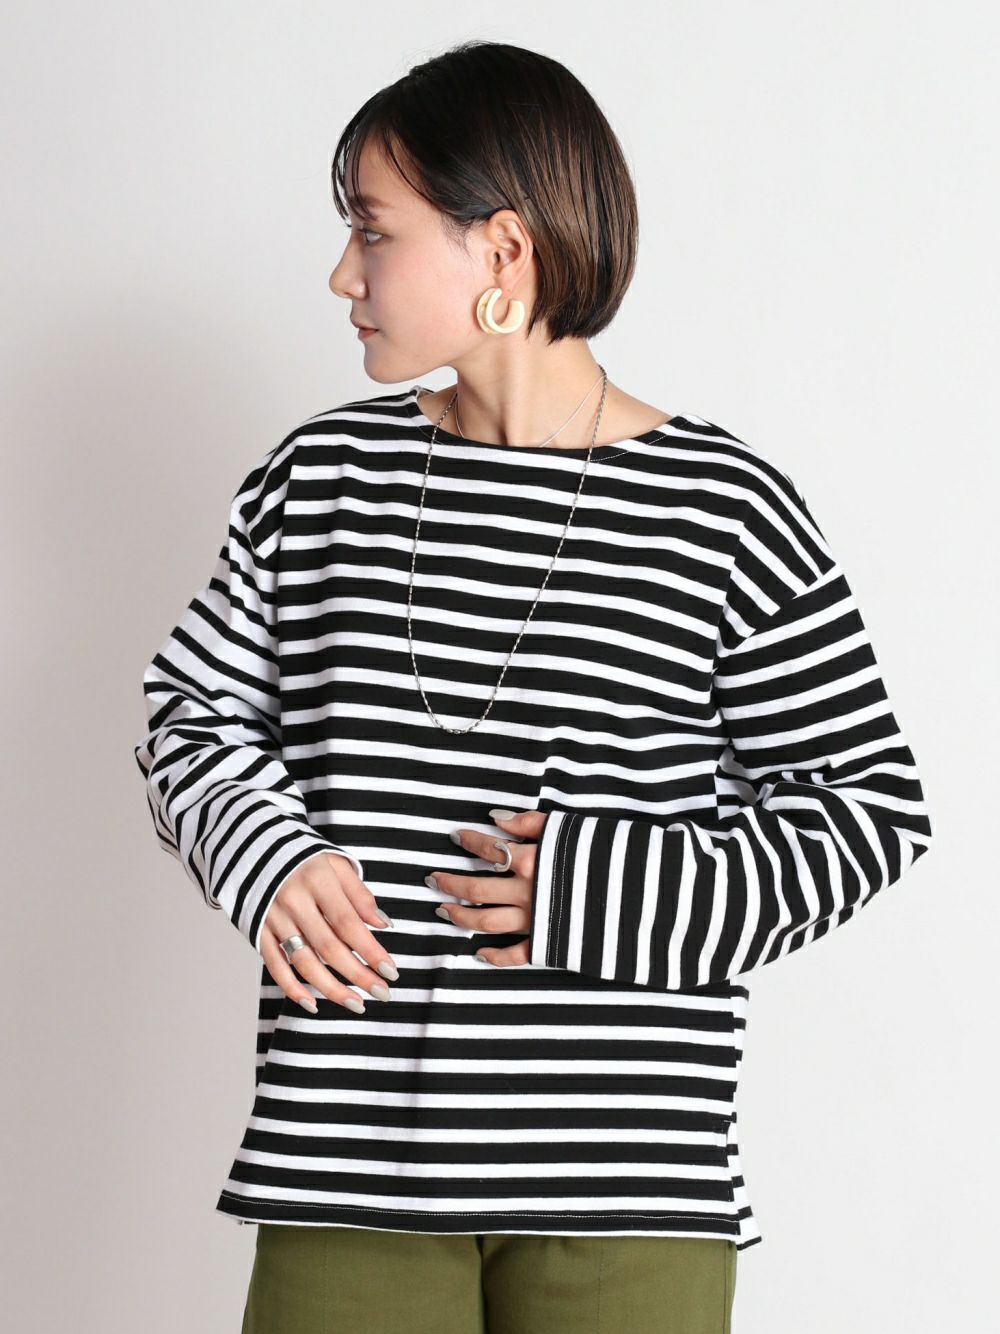 キリカエボーダーロングスリーブTシャツ(CCN-0676) | cepoオンライン